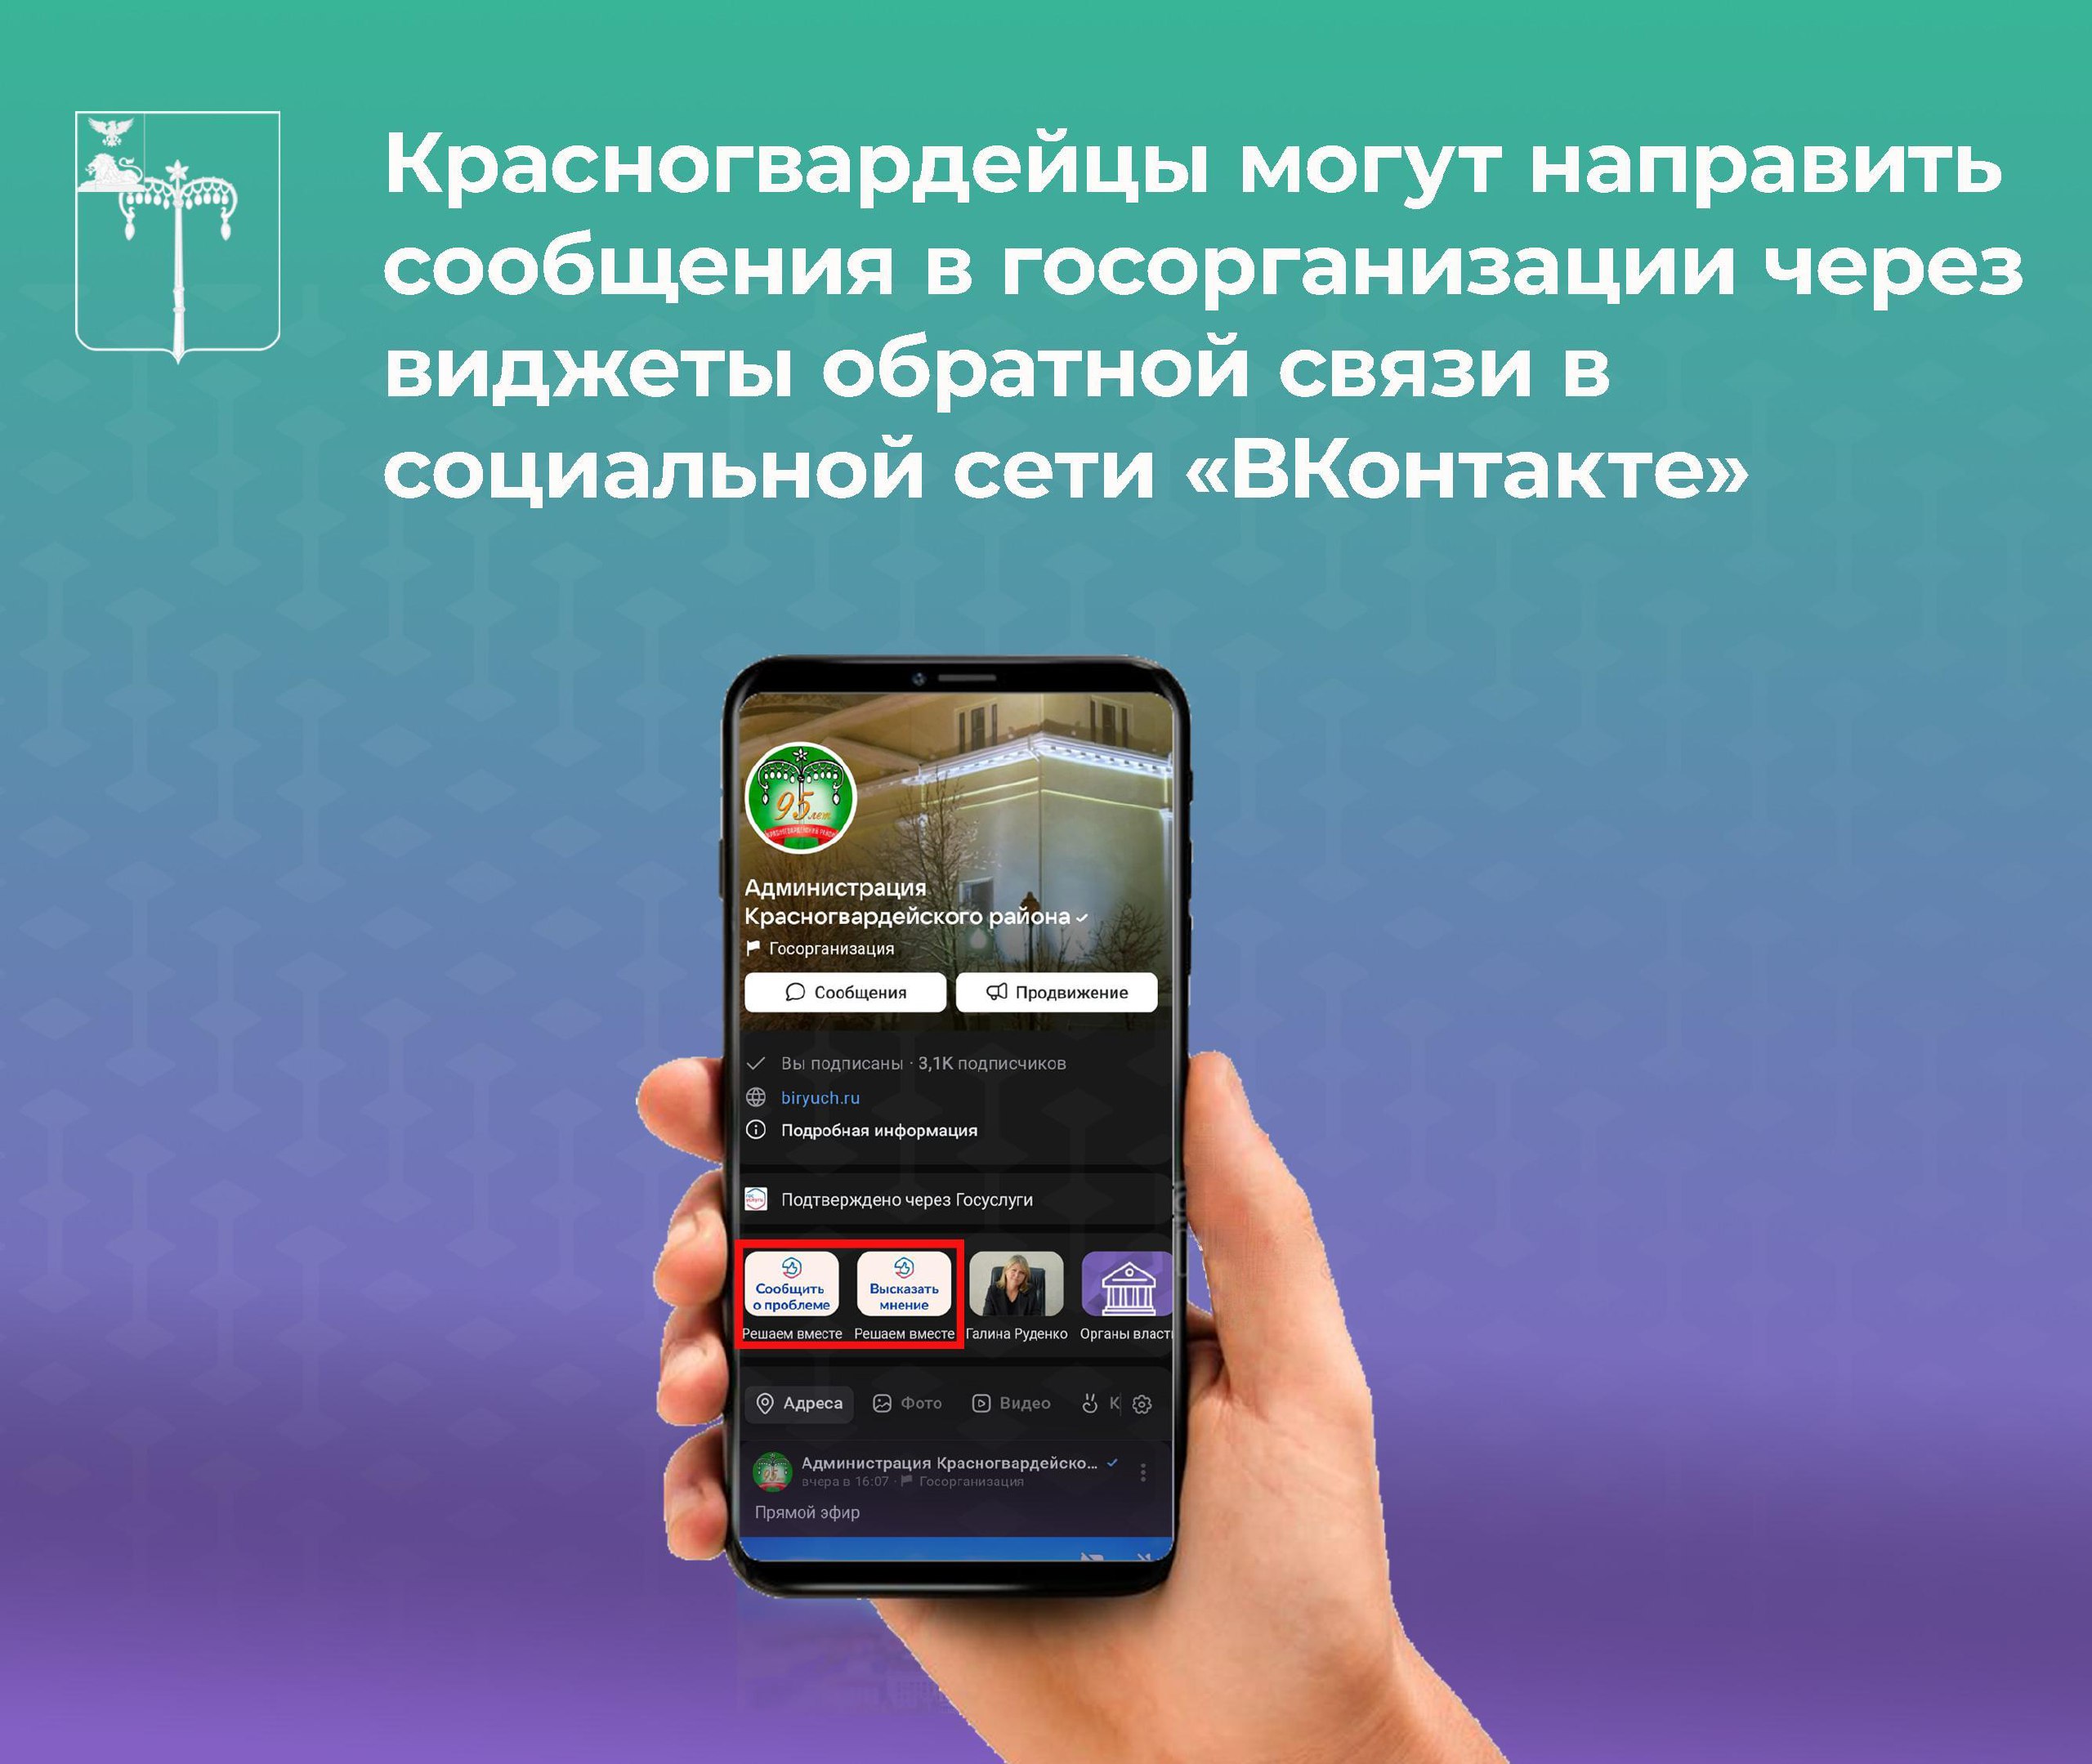 Красногвардейцы могут направить сообщения в госорганизации через виджеты обратной связи в социальной сети «ВКонтакте».